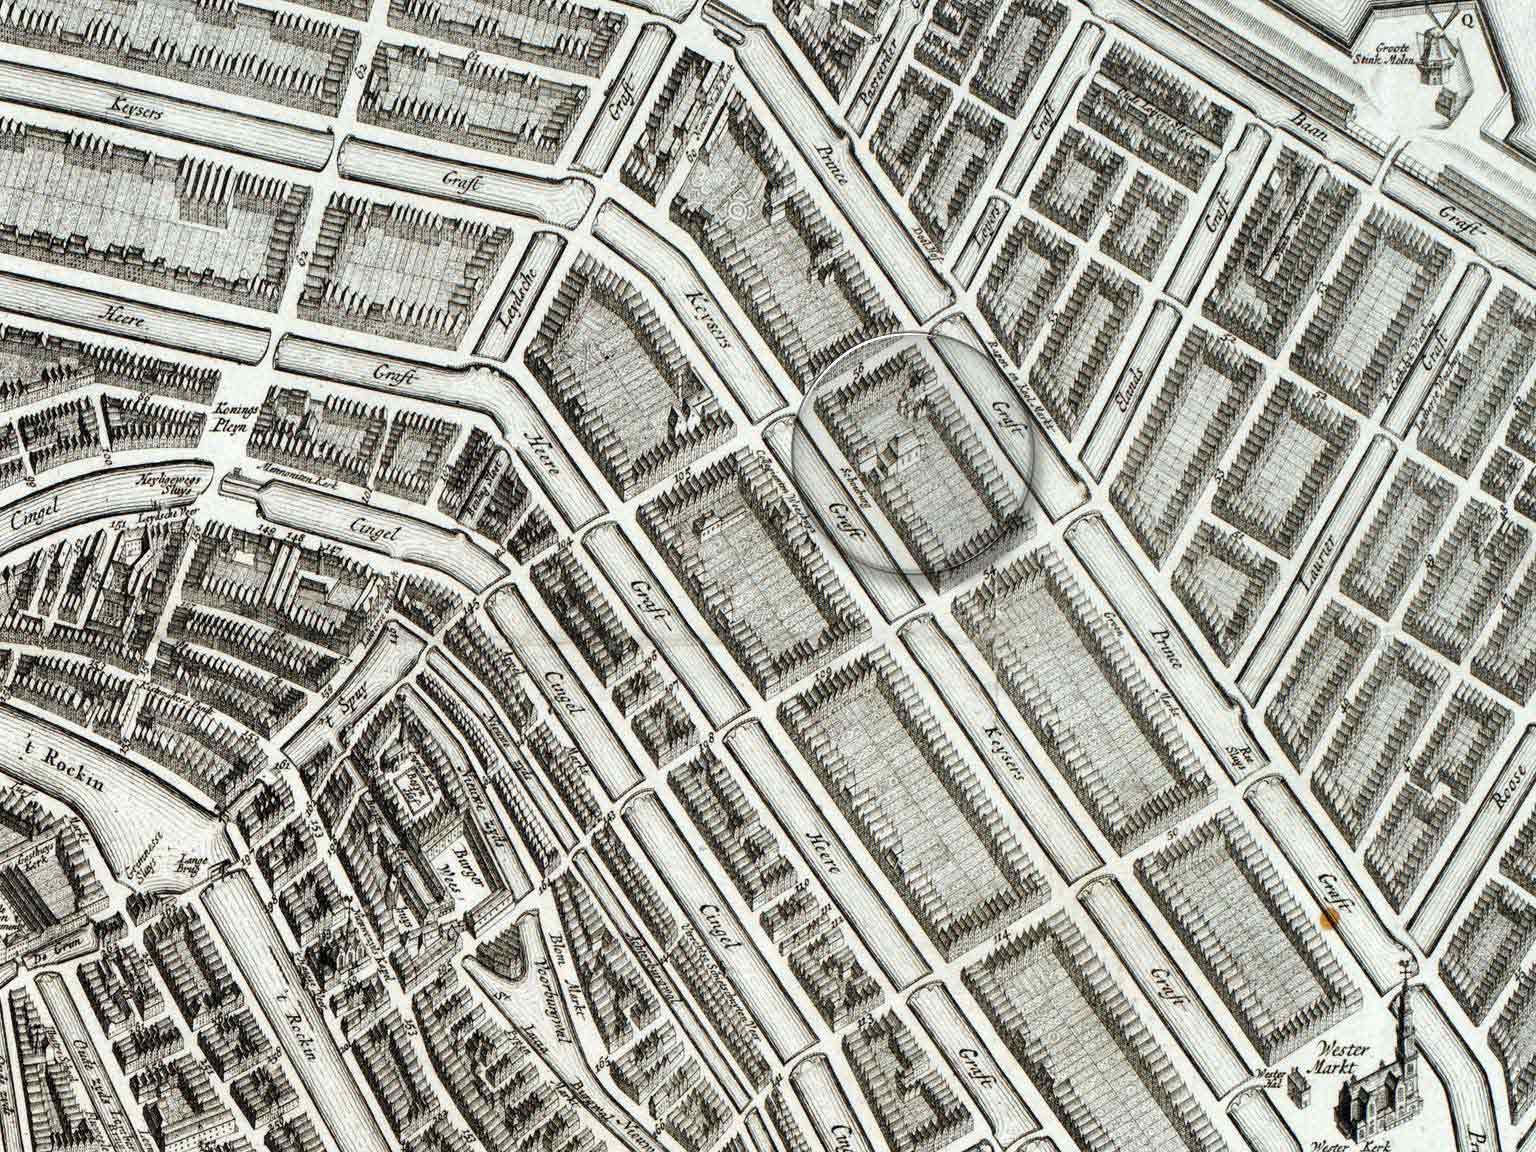 De oude Stadsschouwburg op de Keizersgracht, Amsterdam, detail van een kaart uit 1737 van Gerrit de Broen